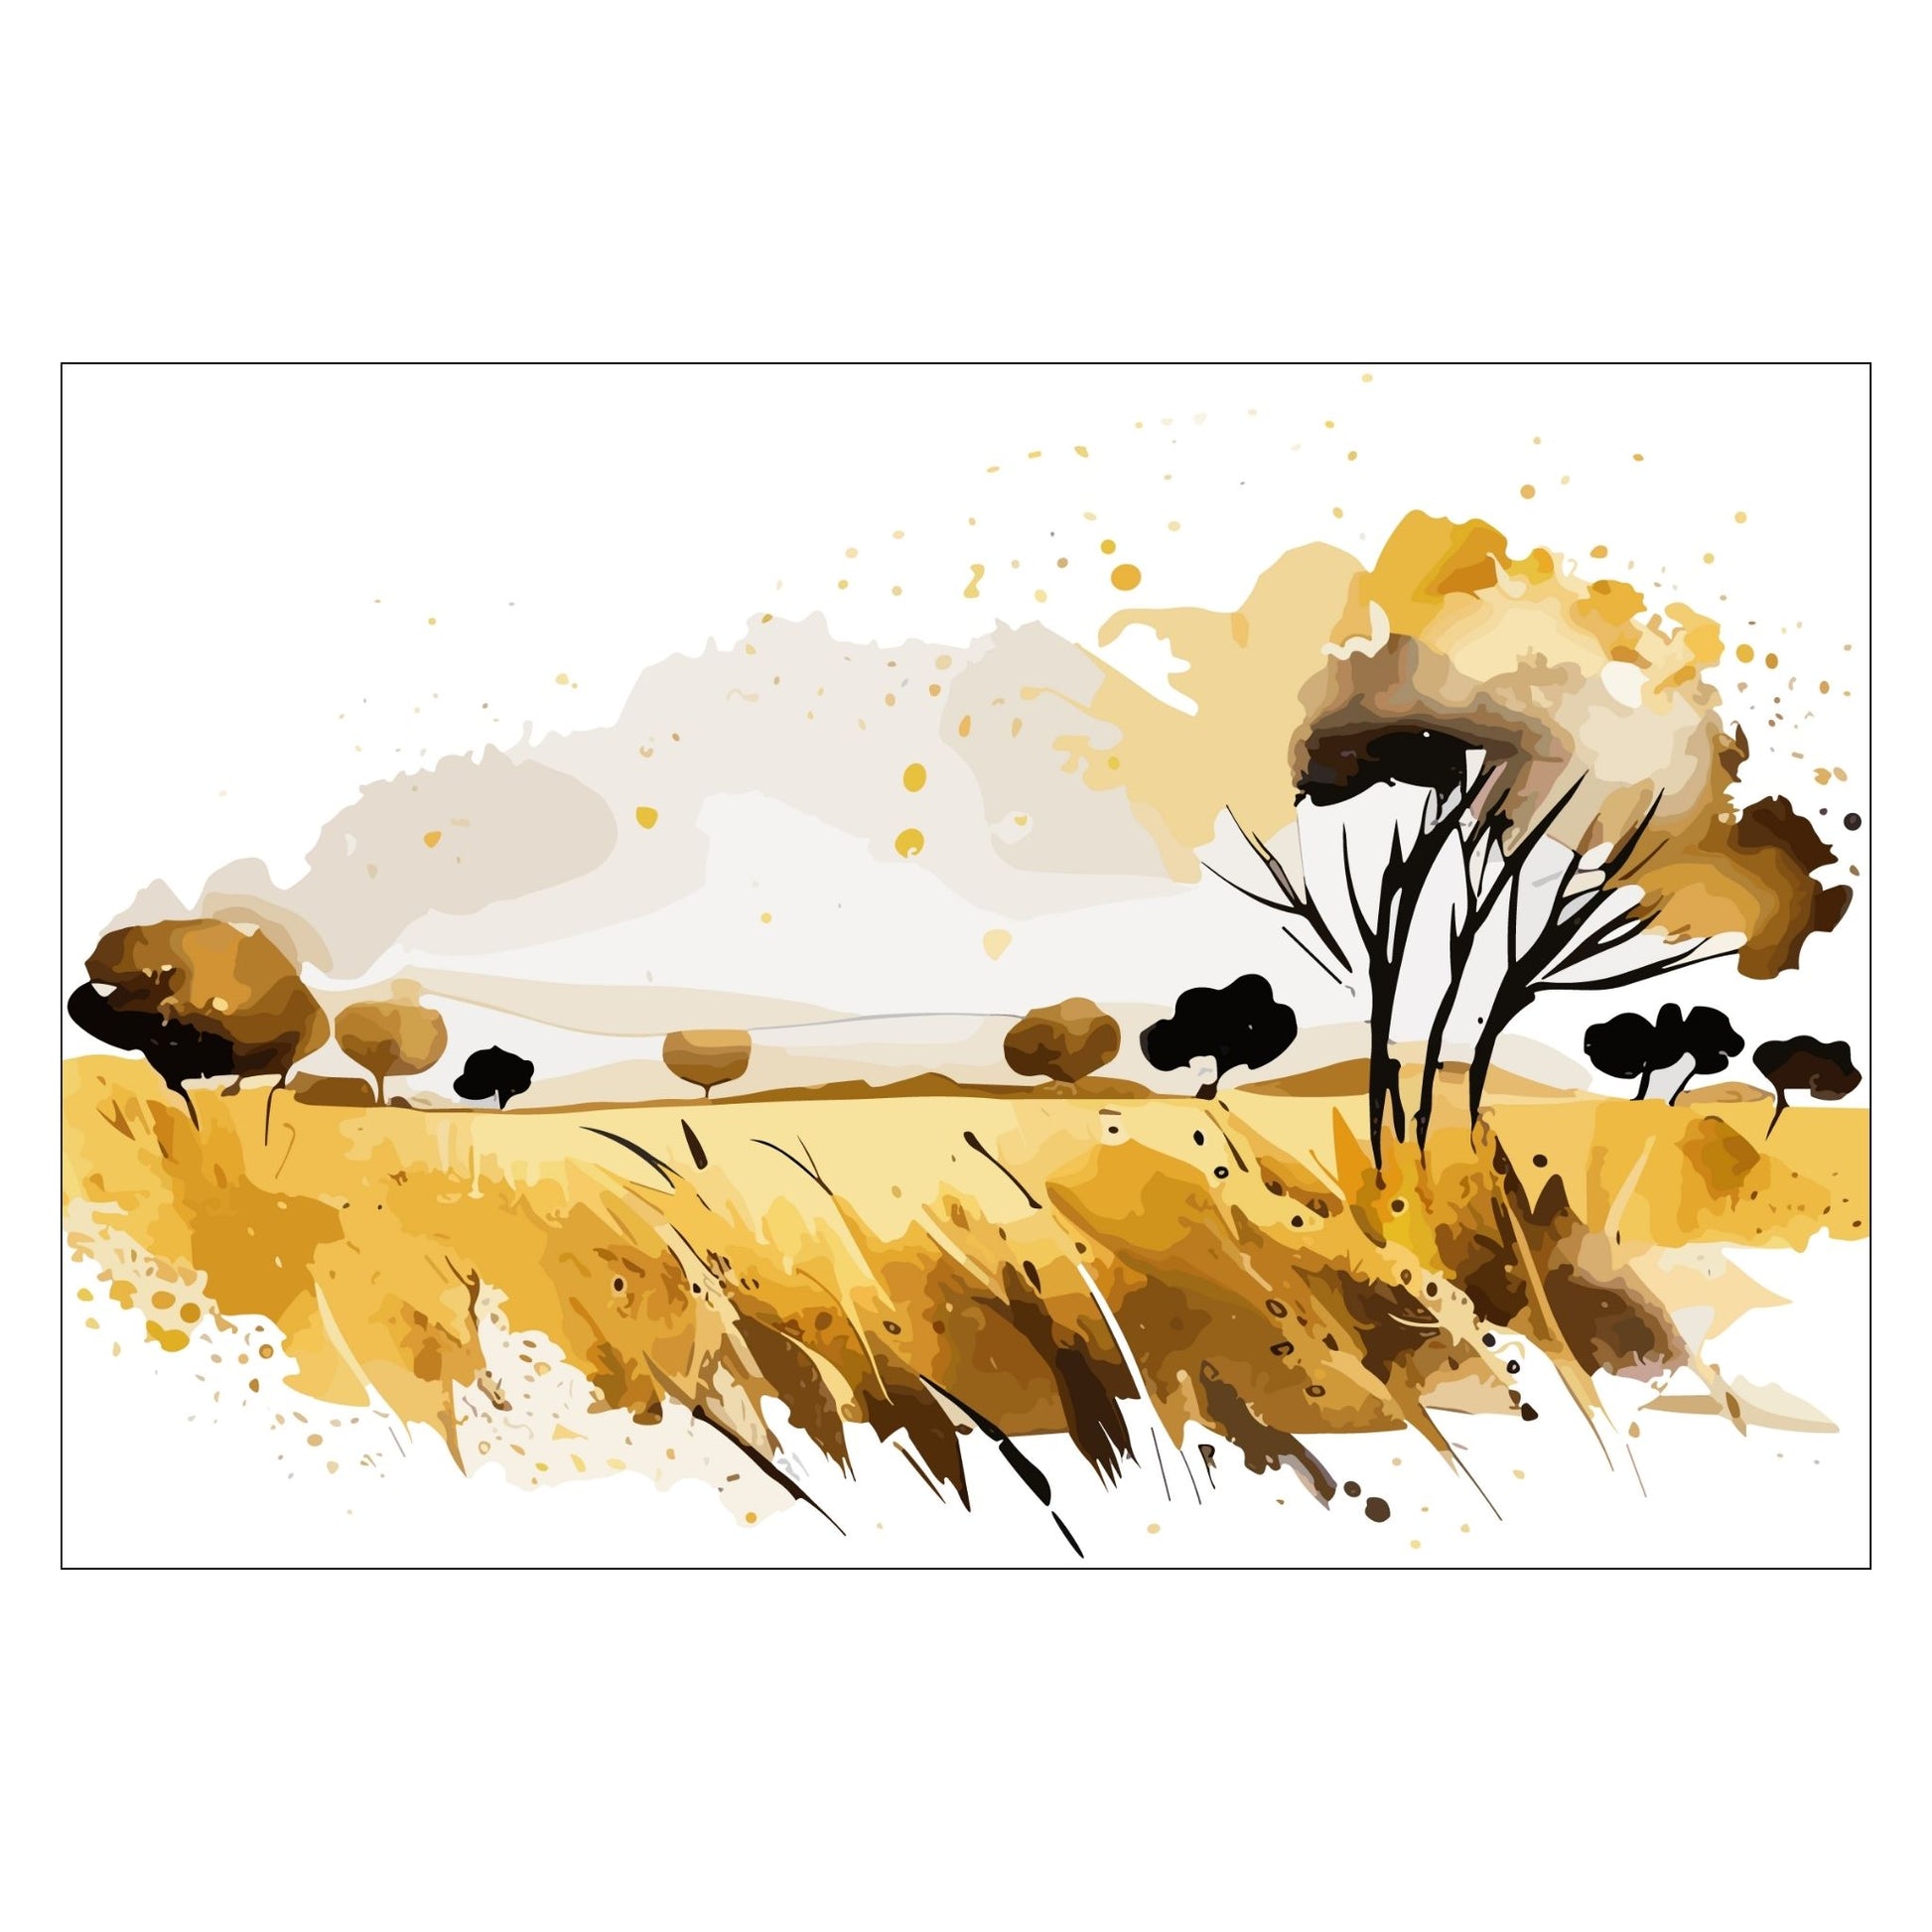 White Fields er en serie med grafisk akvarell. Motivet er åkerlandskap i duse orange, beige og svarte nyanser. Plakaten har en hvit kant som gir dybde og fremhever motivet. I